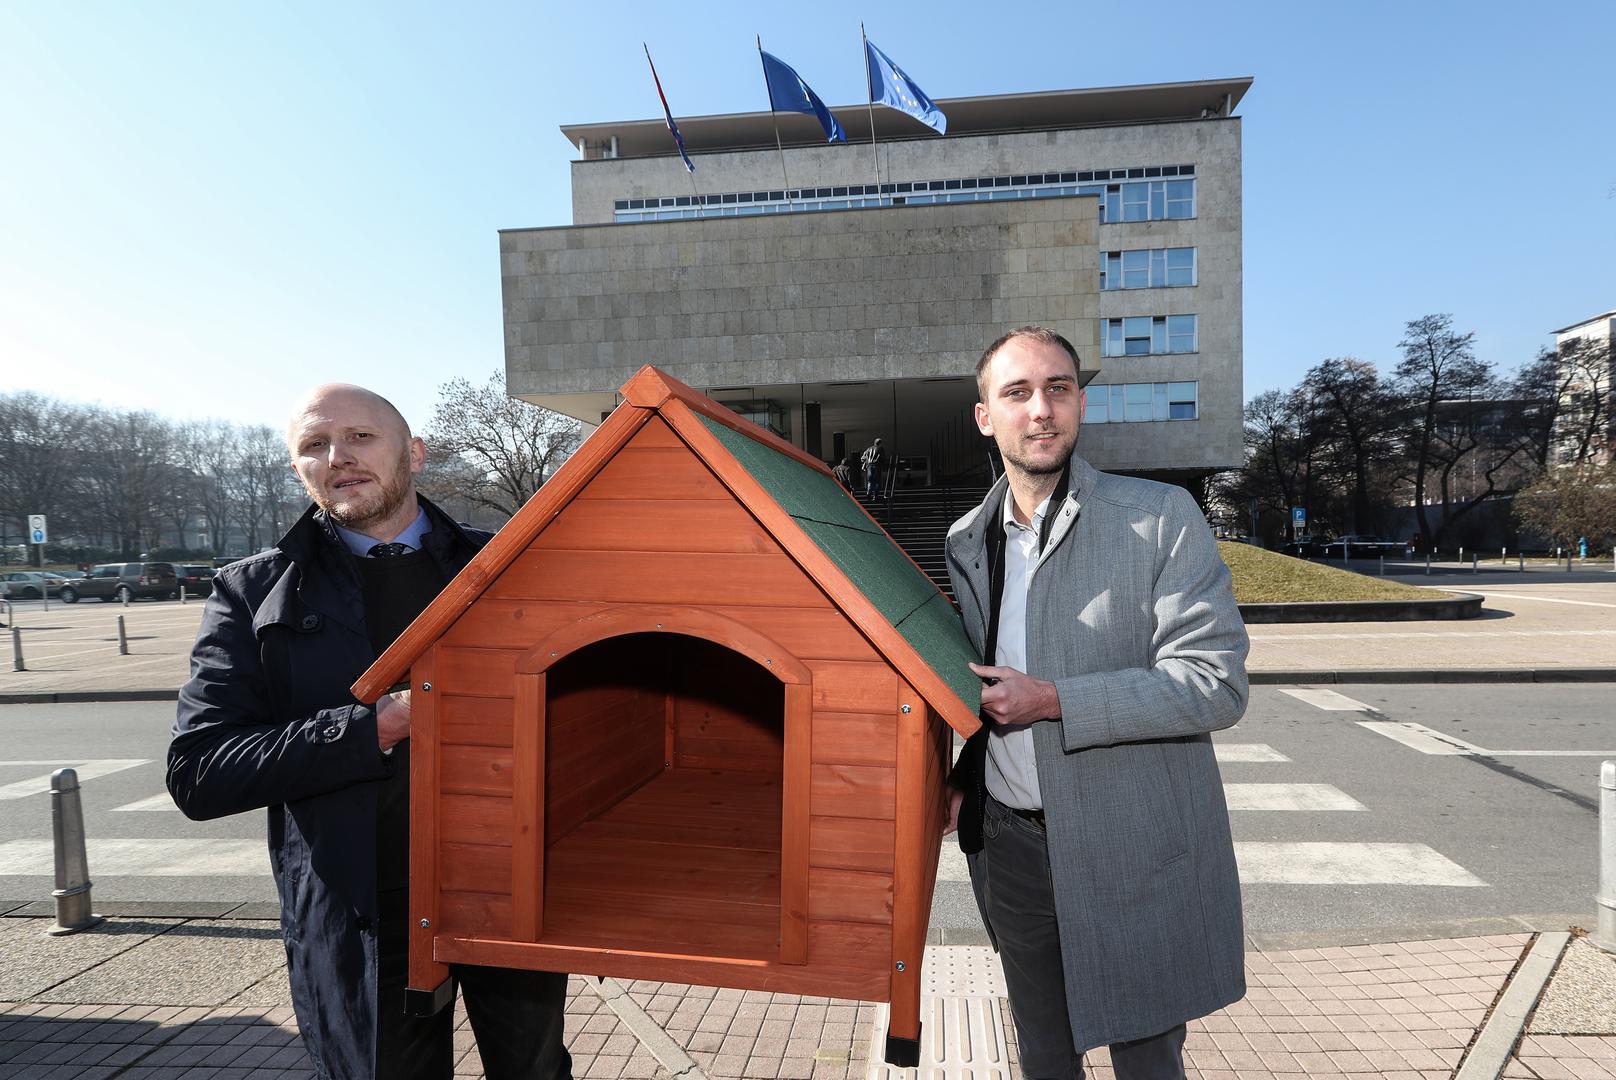 Renato Petek i Matej Mišić sami su šarafili kućicu, a radove je nadgledao i Petekov pas Bob; u jednom trenutku zastupnici su skinuli i džempere.